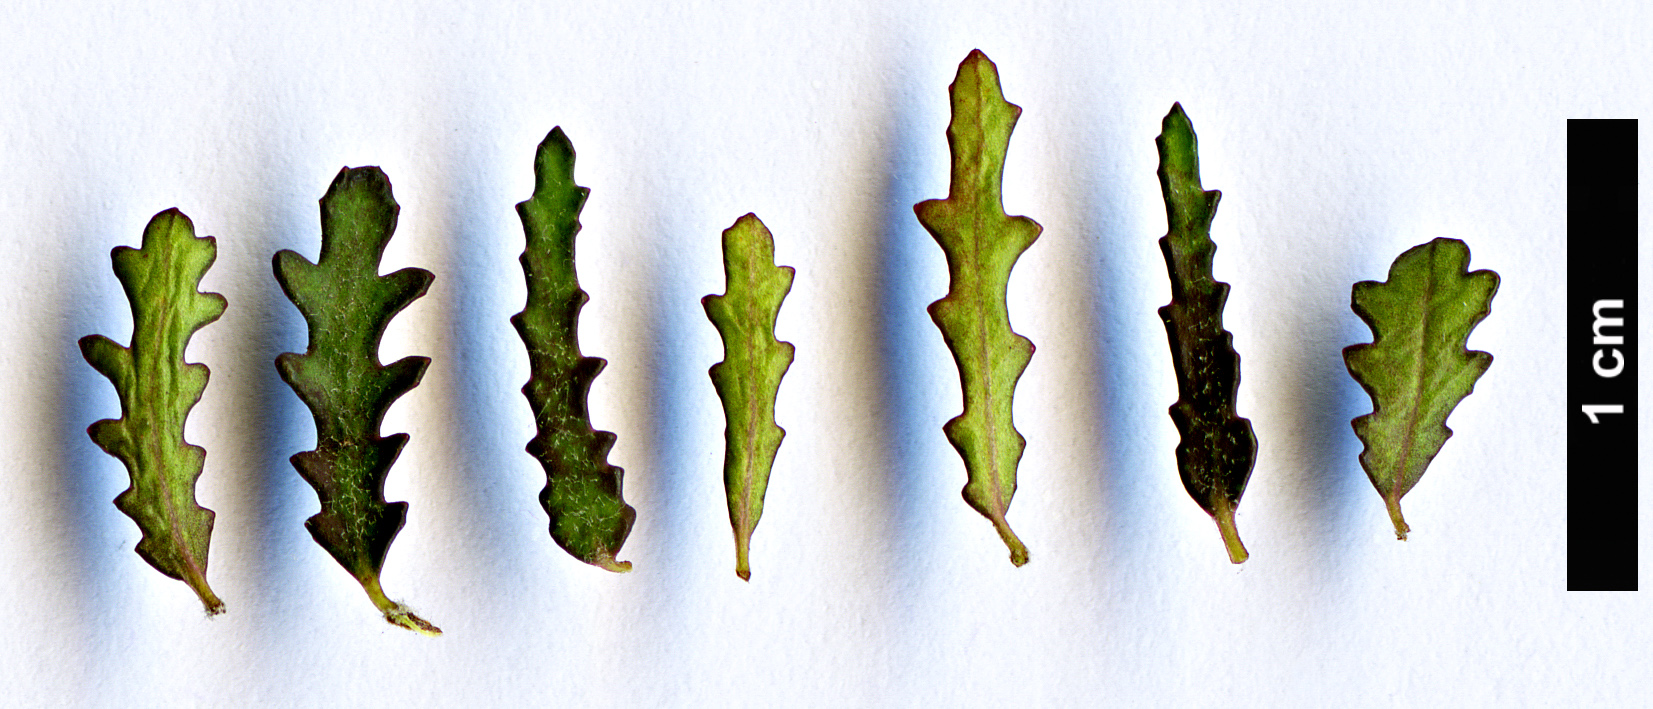 High resolution image: Family: Pittosporaceae - Genus: Pittosporum - Taxon: anomalum